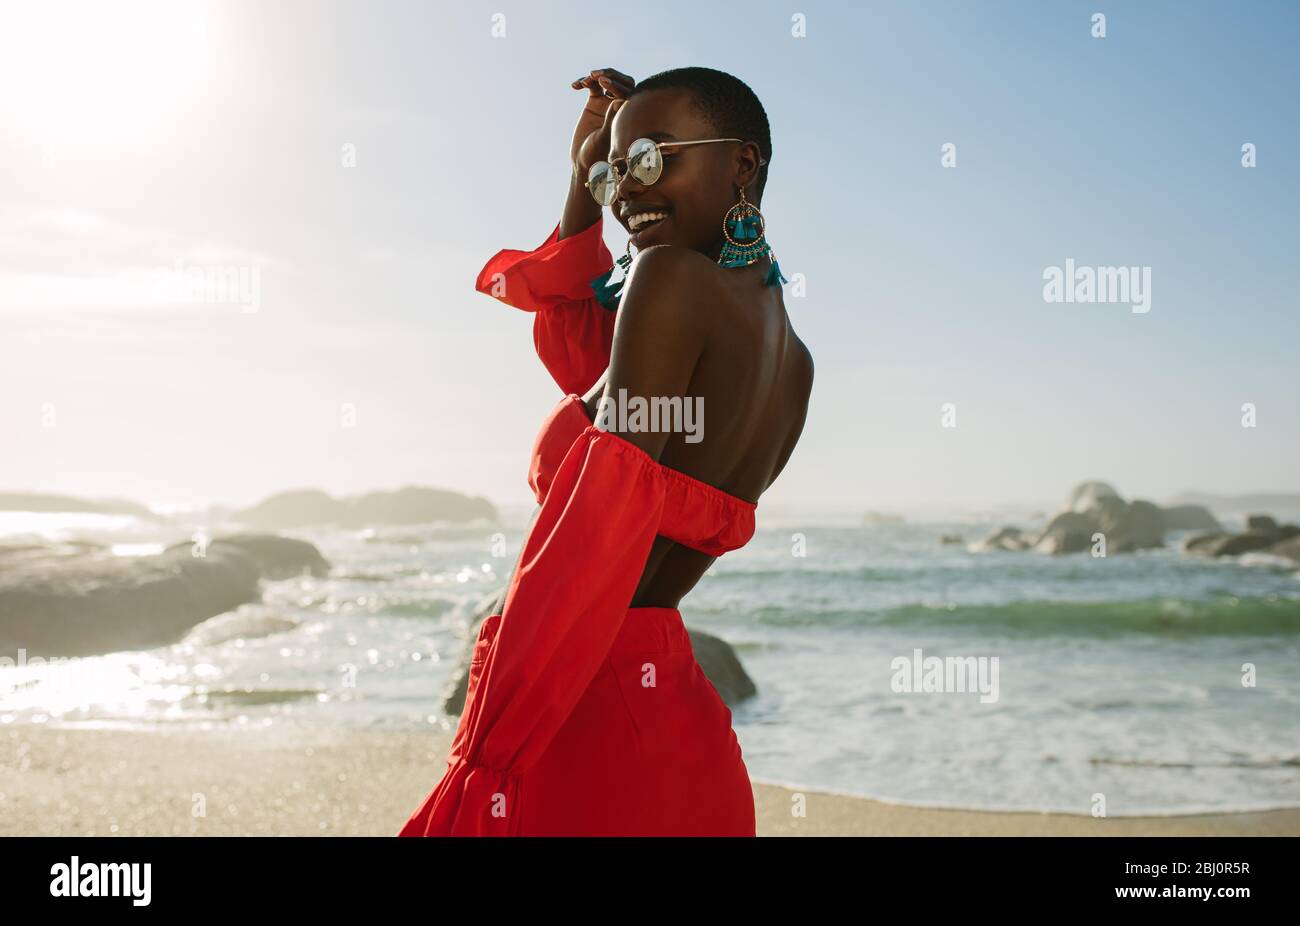 Belle femme africaine en robe rouge profitant sur la plage. Femme souriante dans une belle robe marchant le long de la rive. Banque D'Images